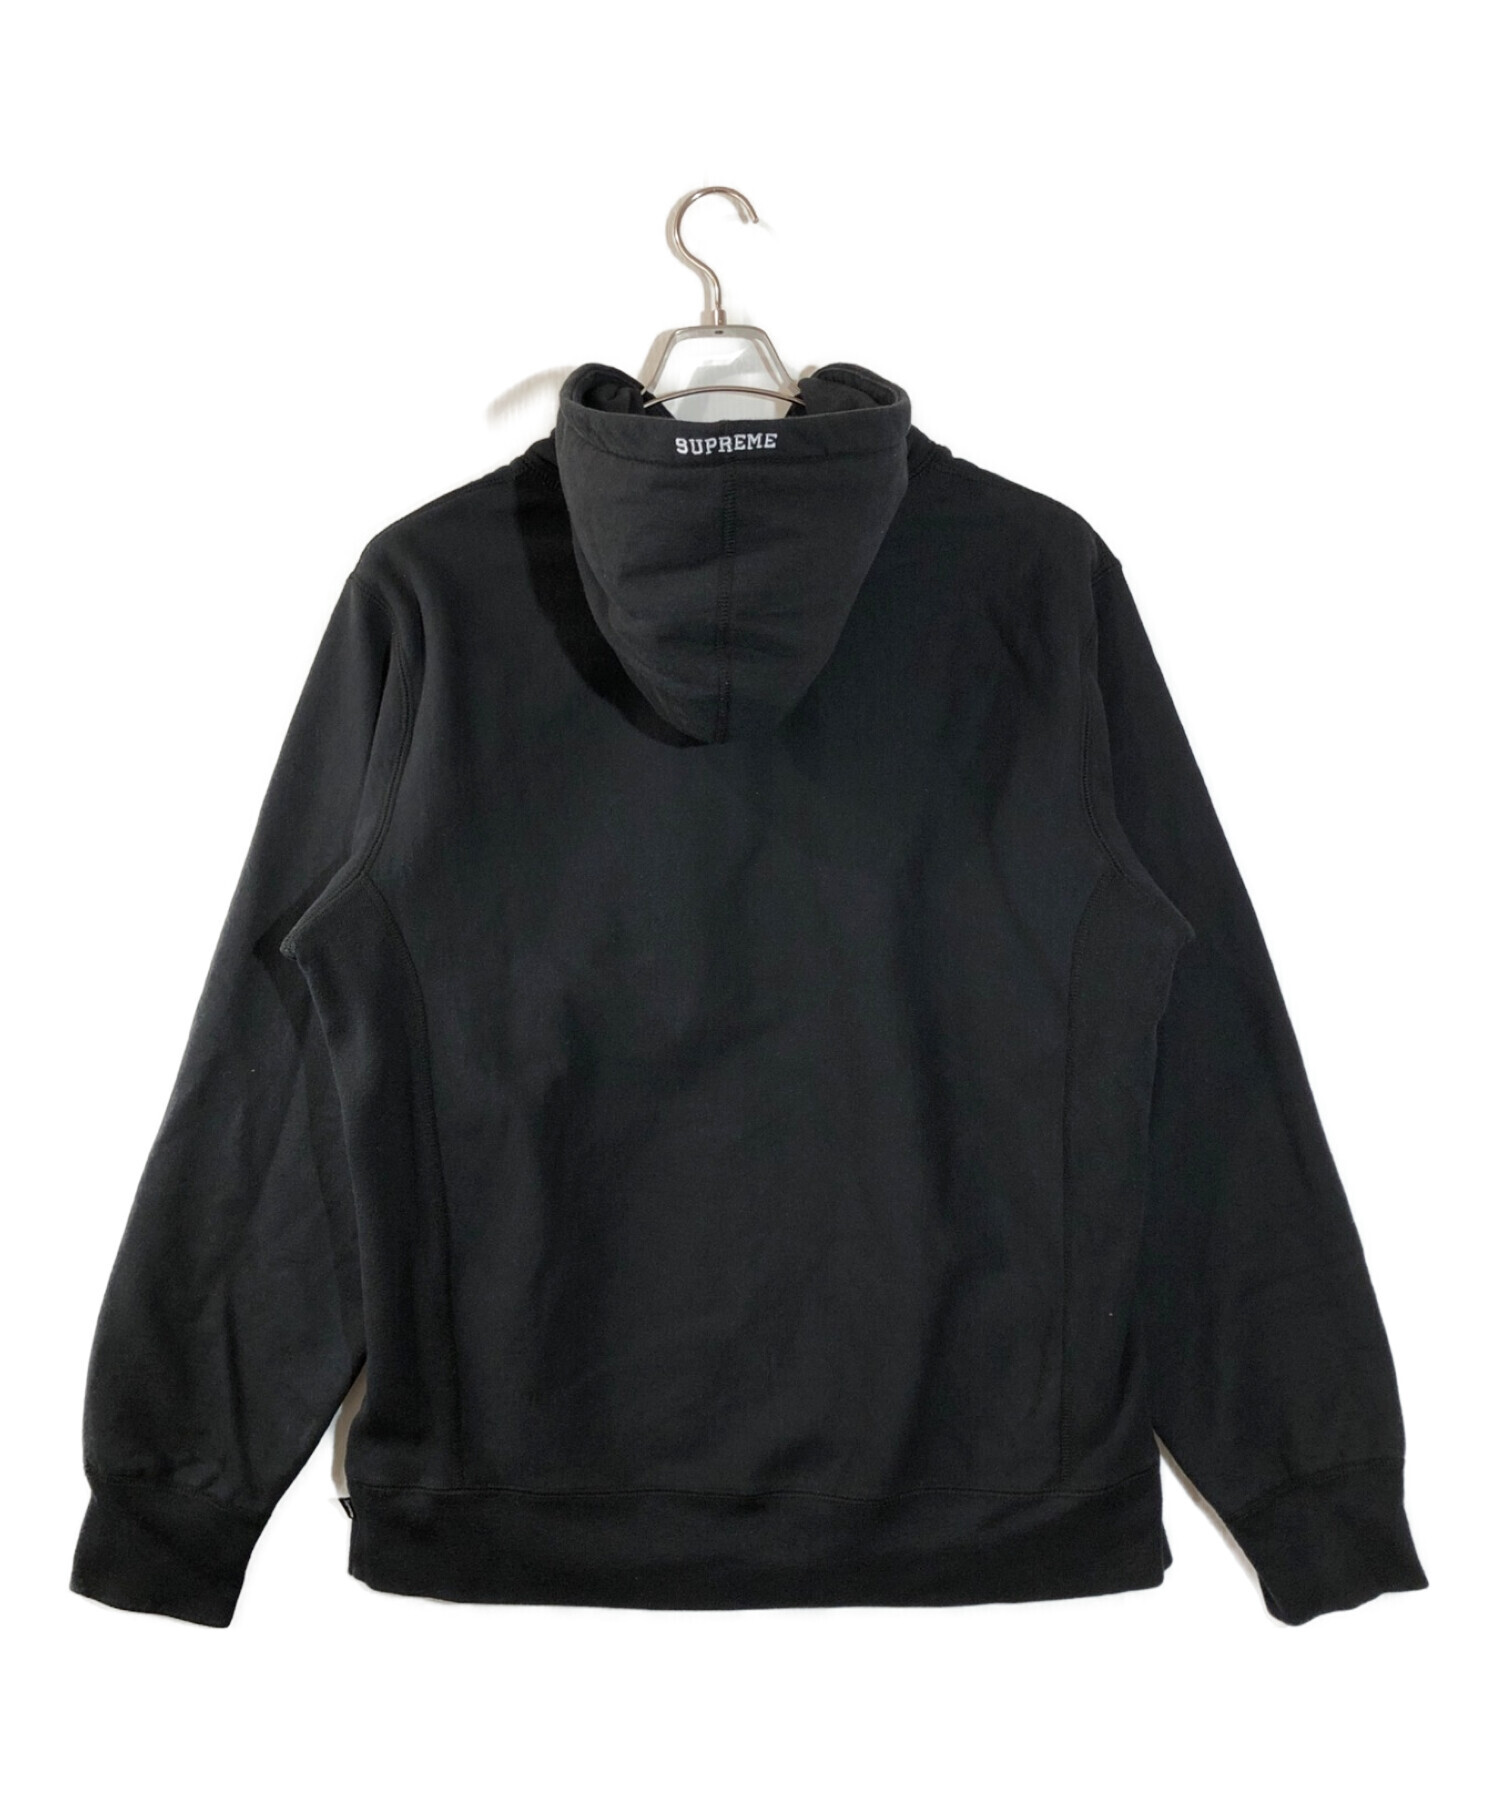 Supreme (シュプリーム) S logo hooded sweatshirt 19AW　ロゴフーデッドスウェットパーカー ブラック サイズ:L